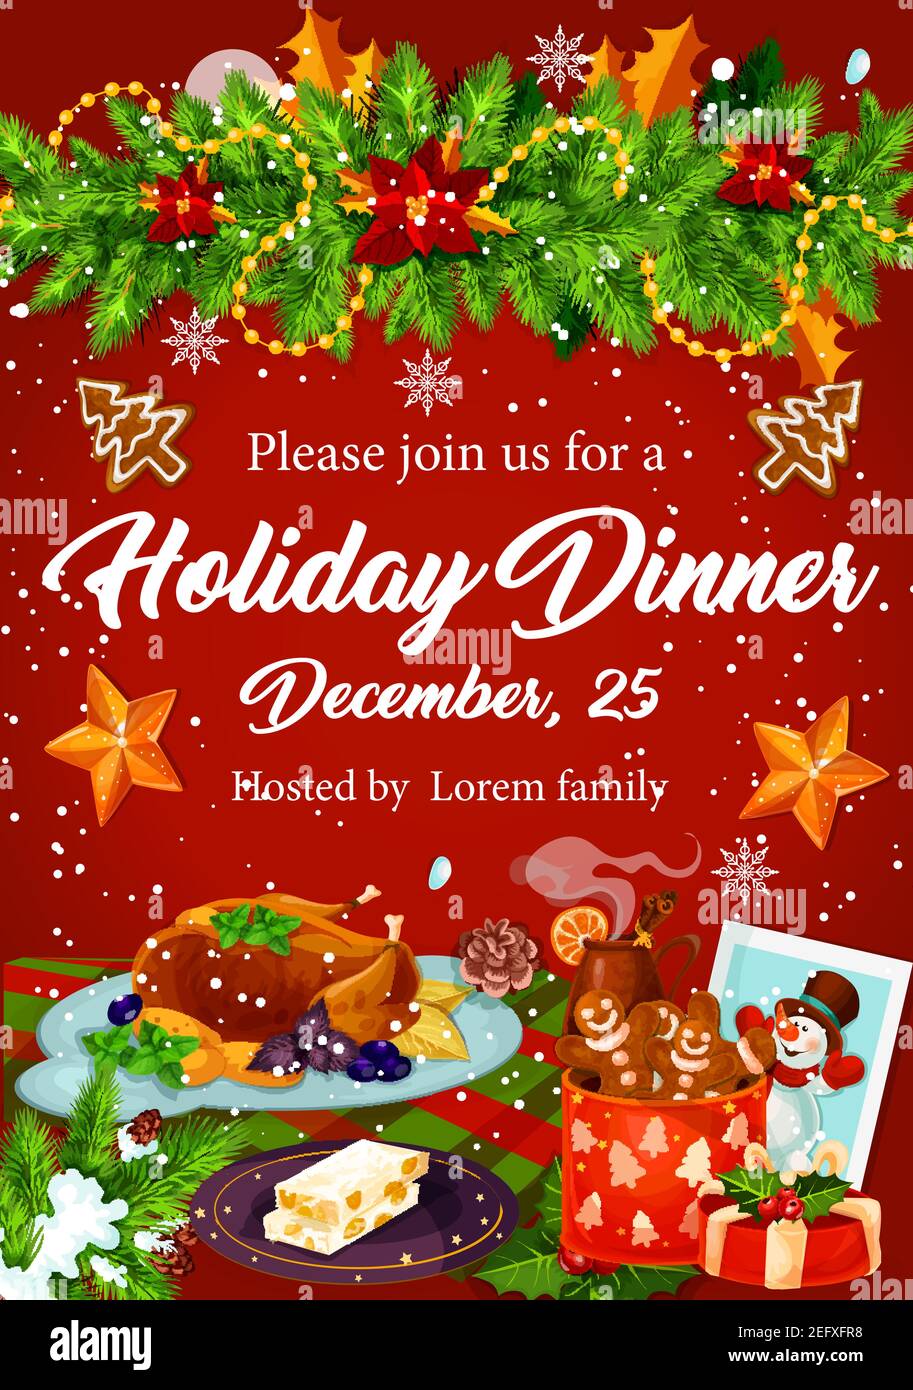 Weihnachts-Dinner-Banner für Winterferien Feier Einladungsvorlage. Truthahn, Keks, Lebkuchen und Glühwein festliches Plakat mit Weihnachtsbaum Stock Vektor